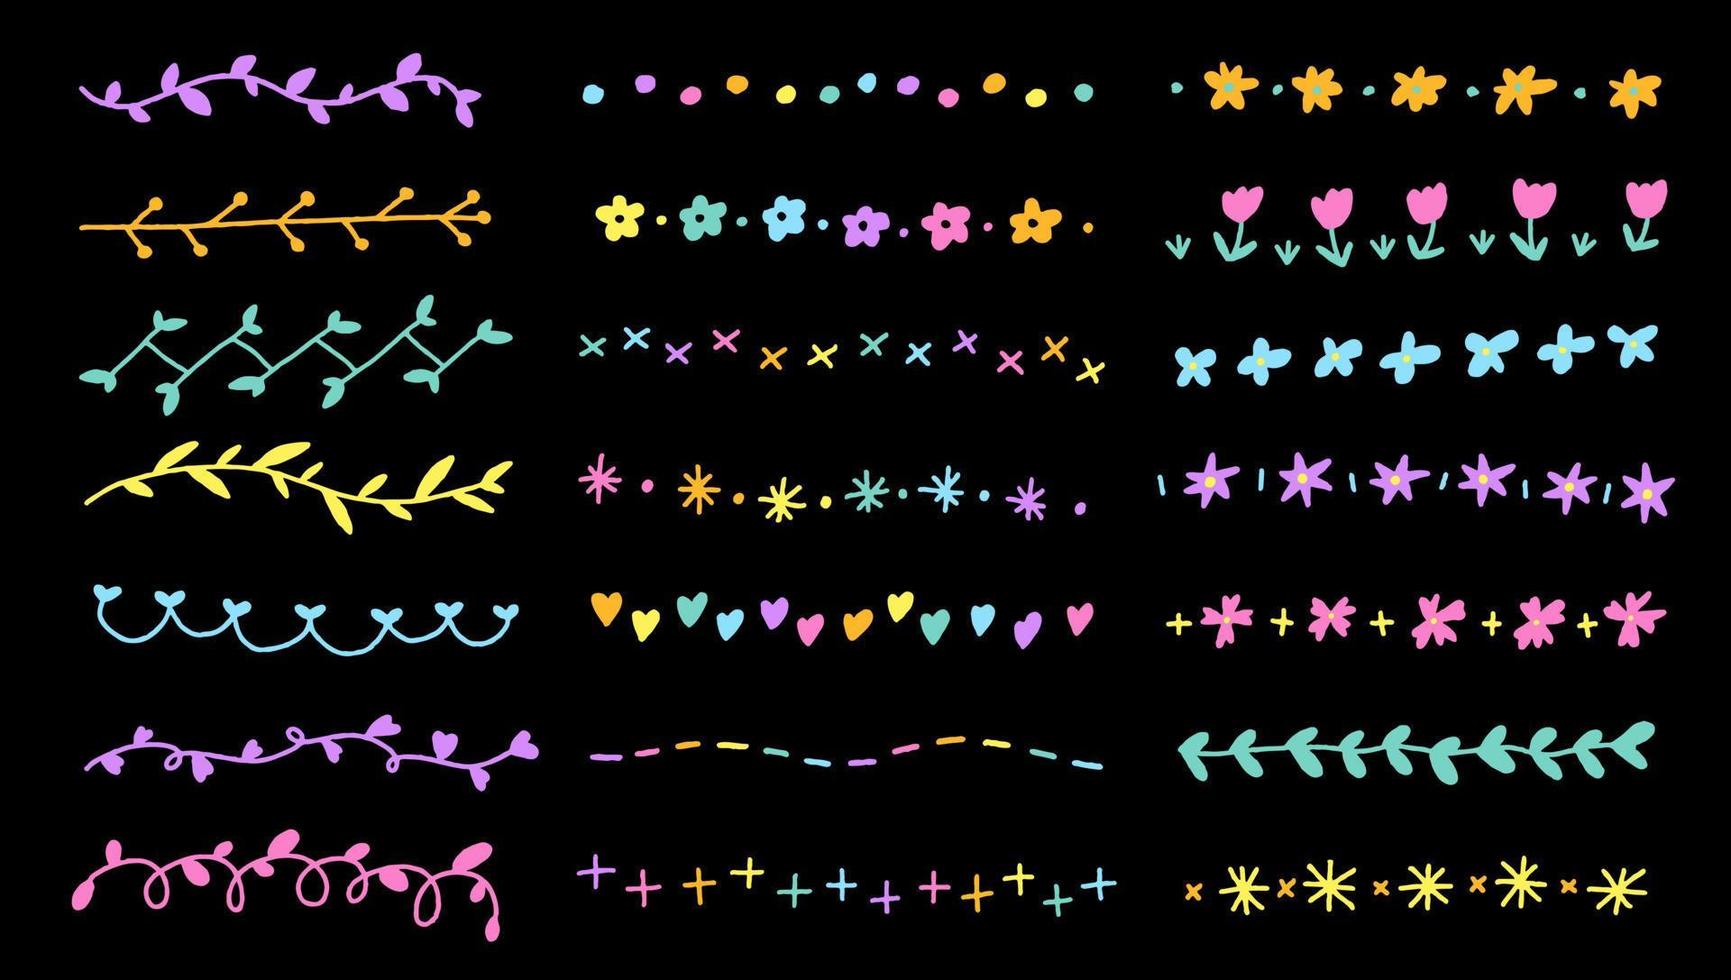 set di disegno a mano disegnato fiore botanico neon astratto doodle linea alloro bordi cornici divisori corona collezione stile piatto arcobaleno luminoso colorato sfondo nero illustrazione vettoriale confezione elemento